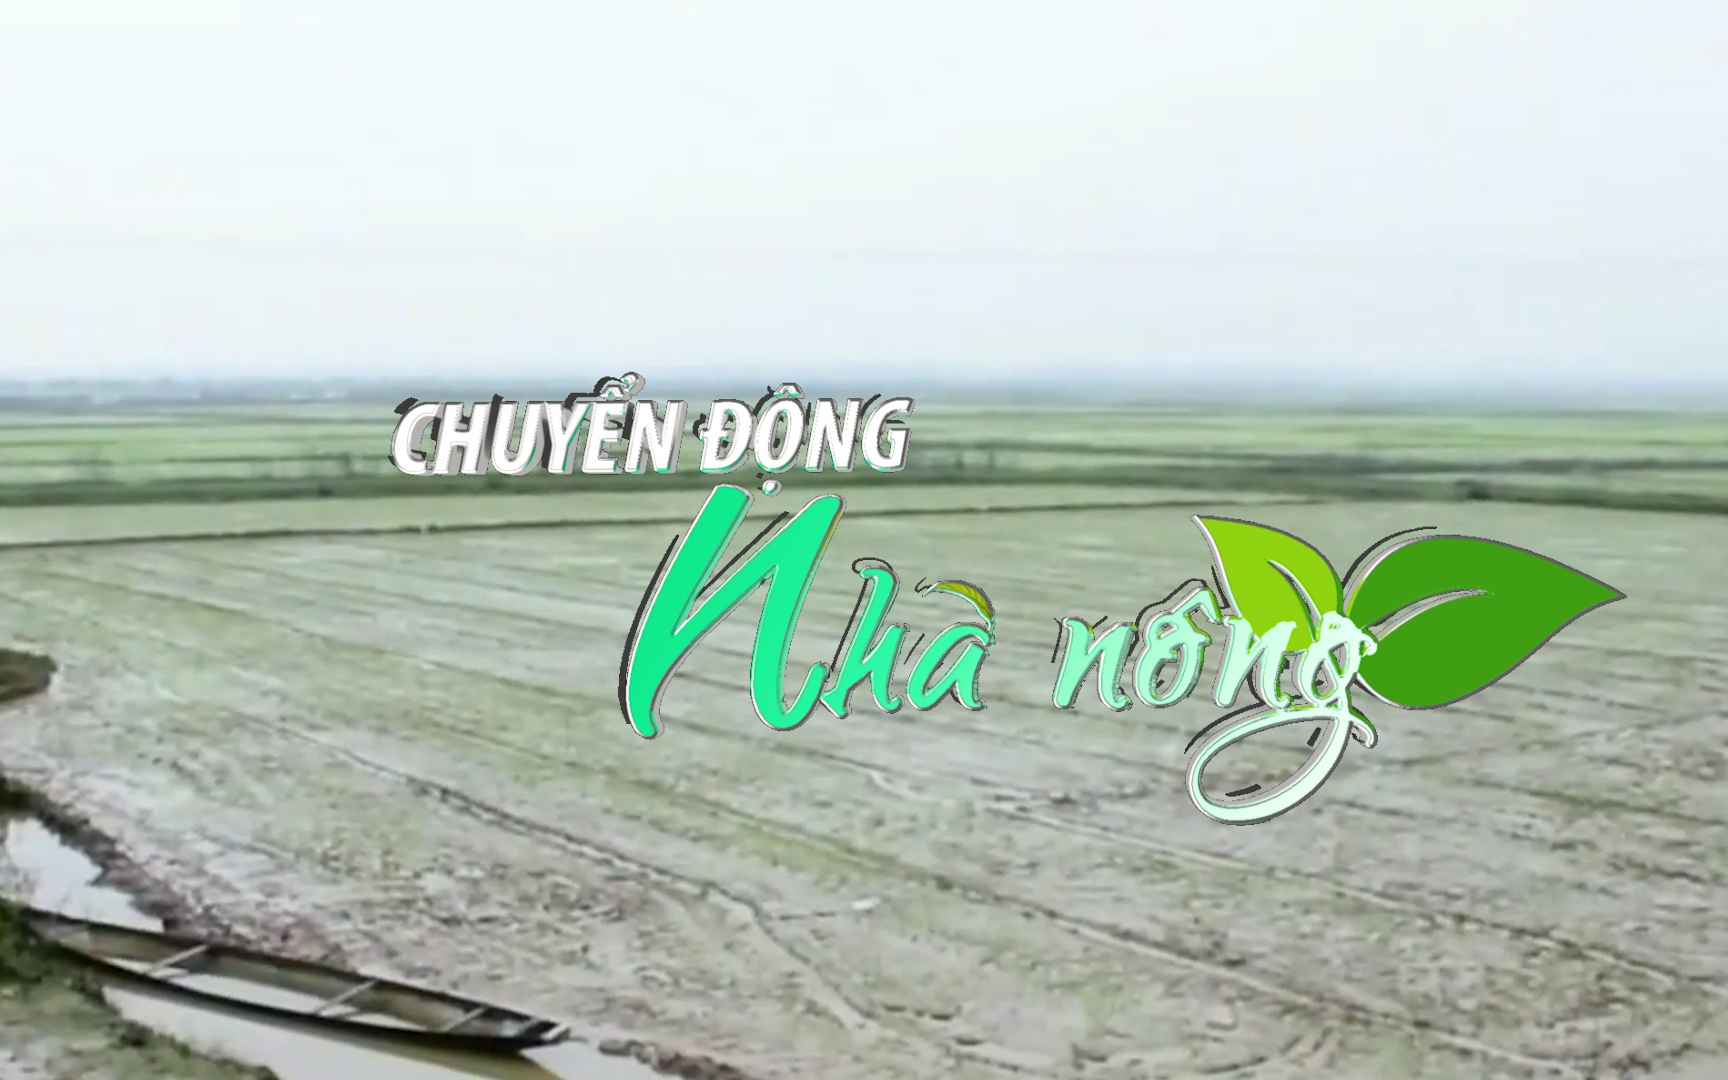 Chuyển động Nhà nông 29/1: Thừa Thiên – Huế tập trung tiêu úng cứu hàng nghìn ha lúa mới gieo